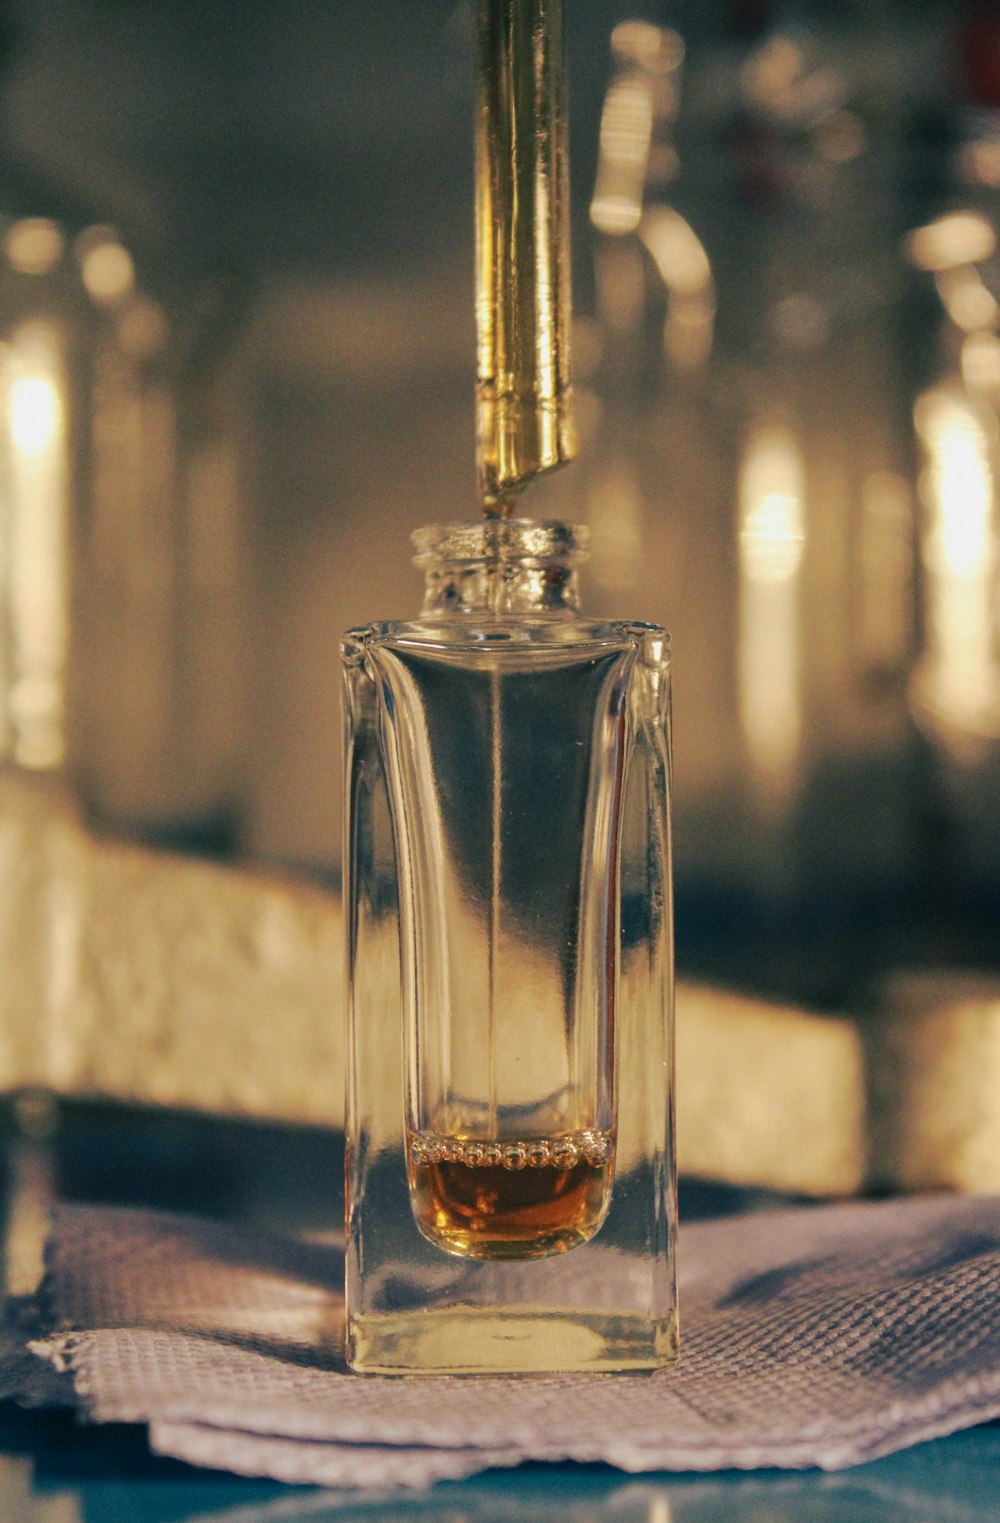 un pequeño frasco de perfume encima de una servilleta